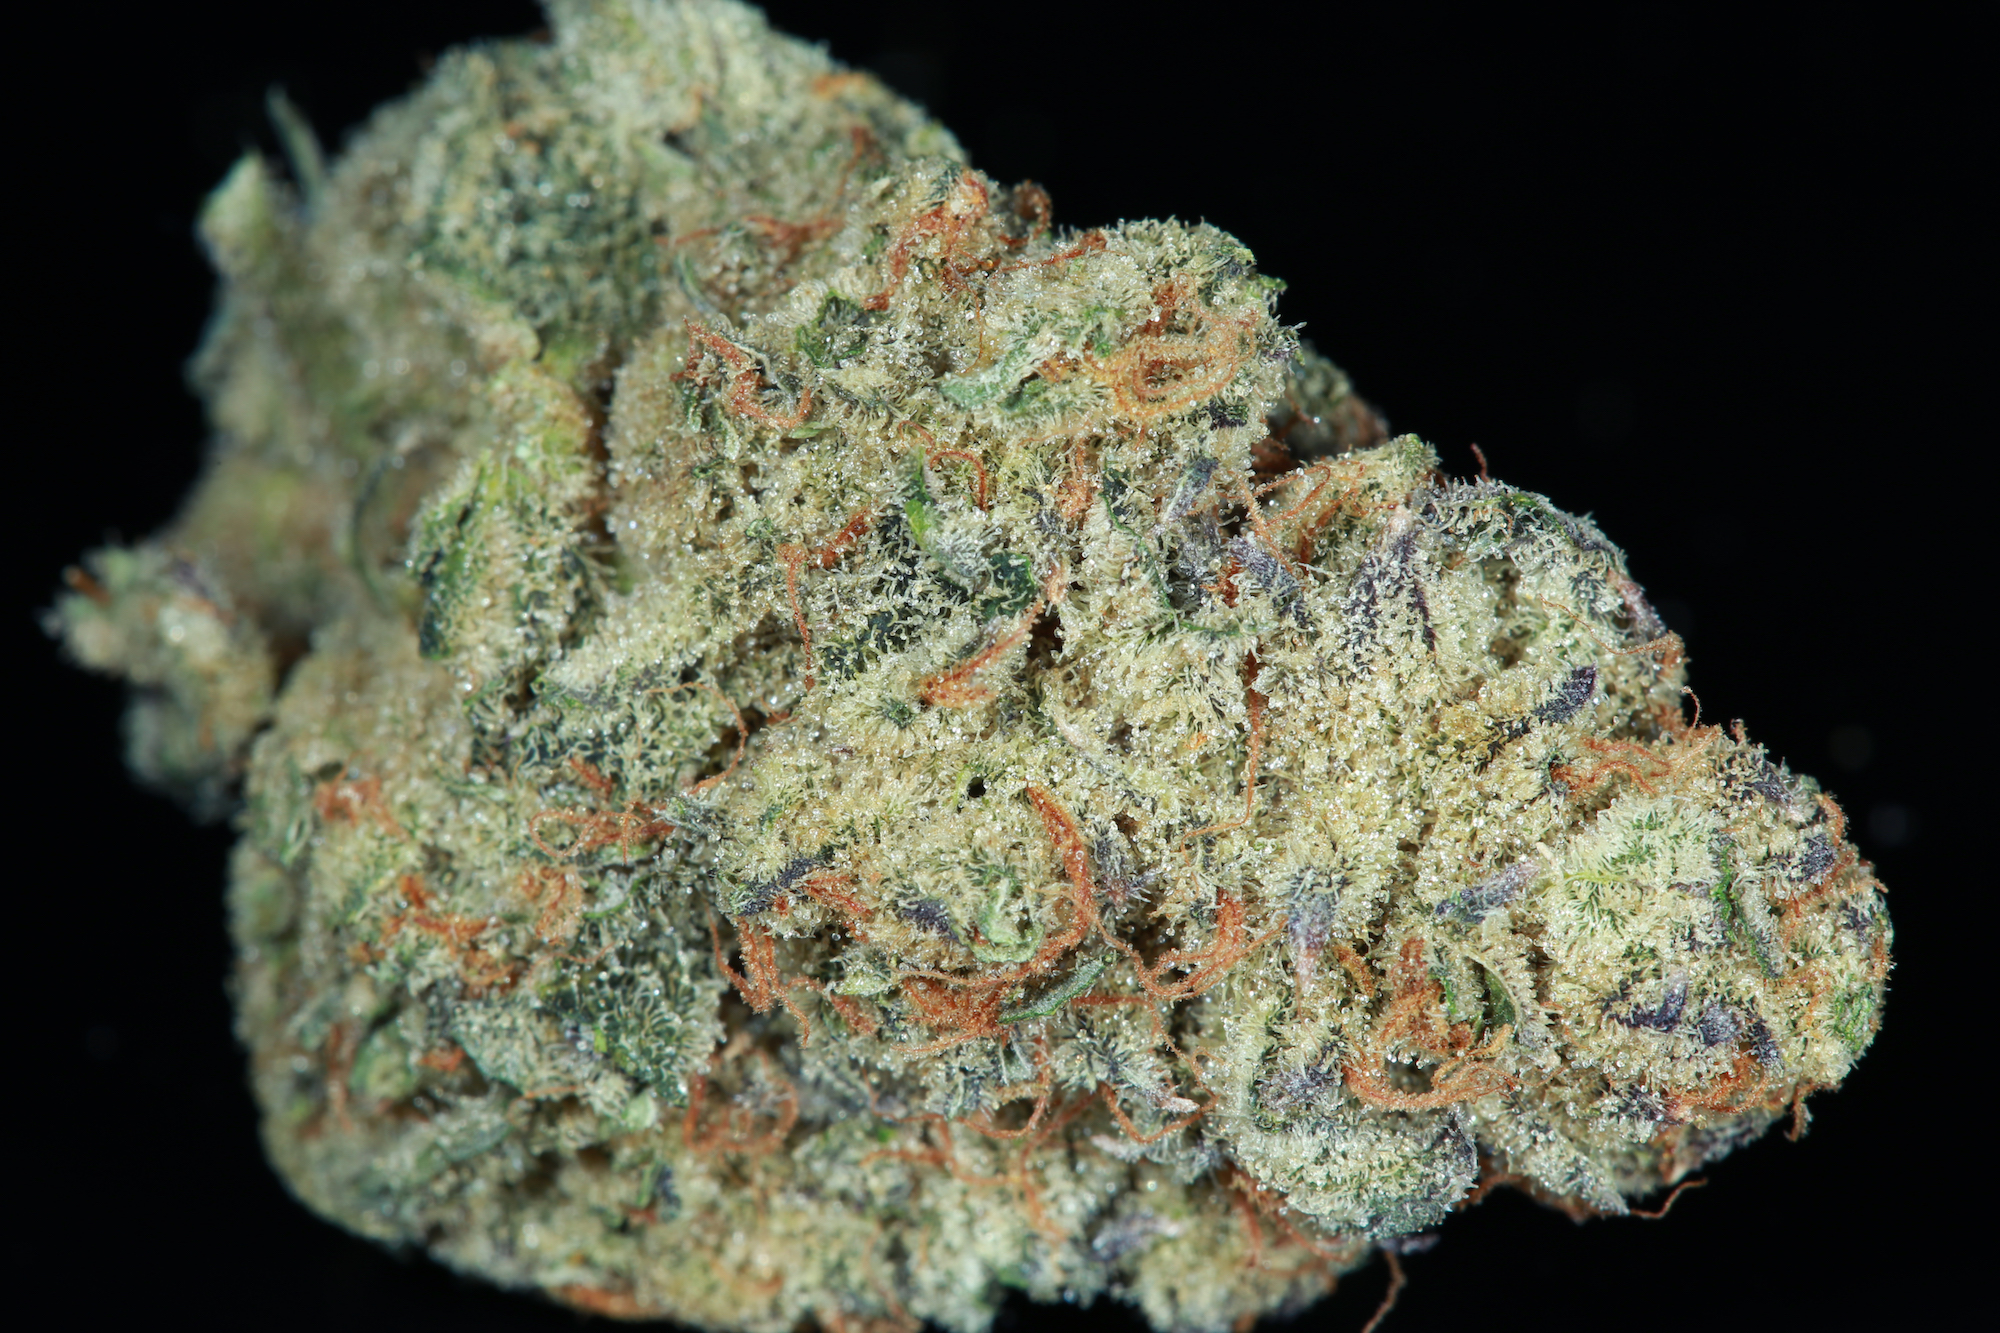 jane-snow-double-og-forum-cut-cookies-starfighter-cross-marijuana-matrix-nevada-best-weed-ever3